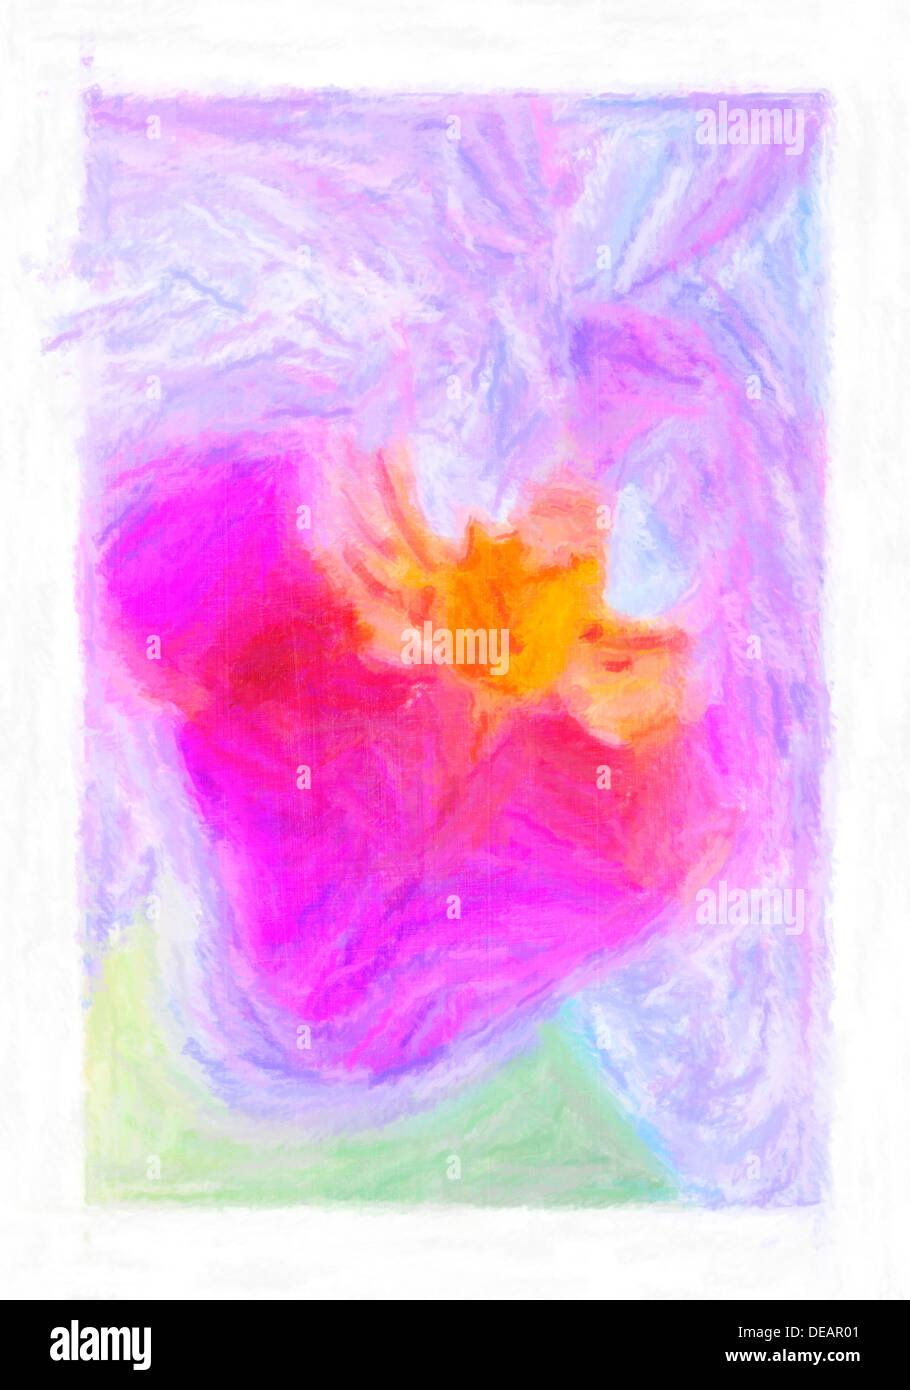 Eine abstrakte digitale Pastell Makro Zeichnungsbild von einer Orchidee Blume Kopf perfekt für eine Valentinstag-Karte. Stockfoto